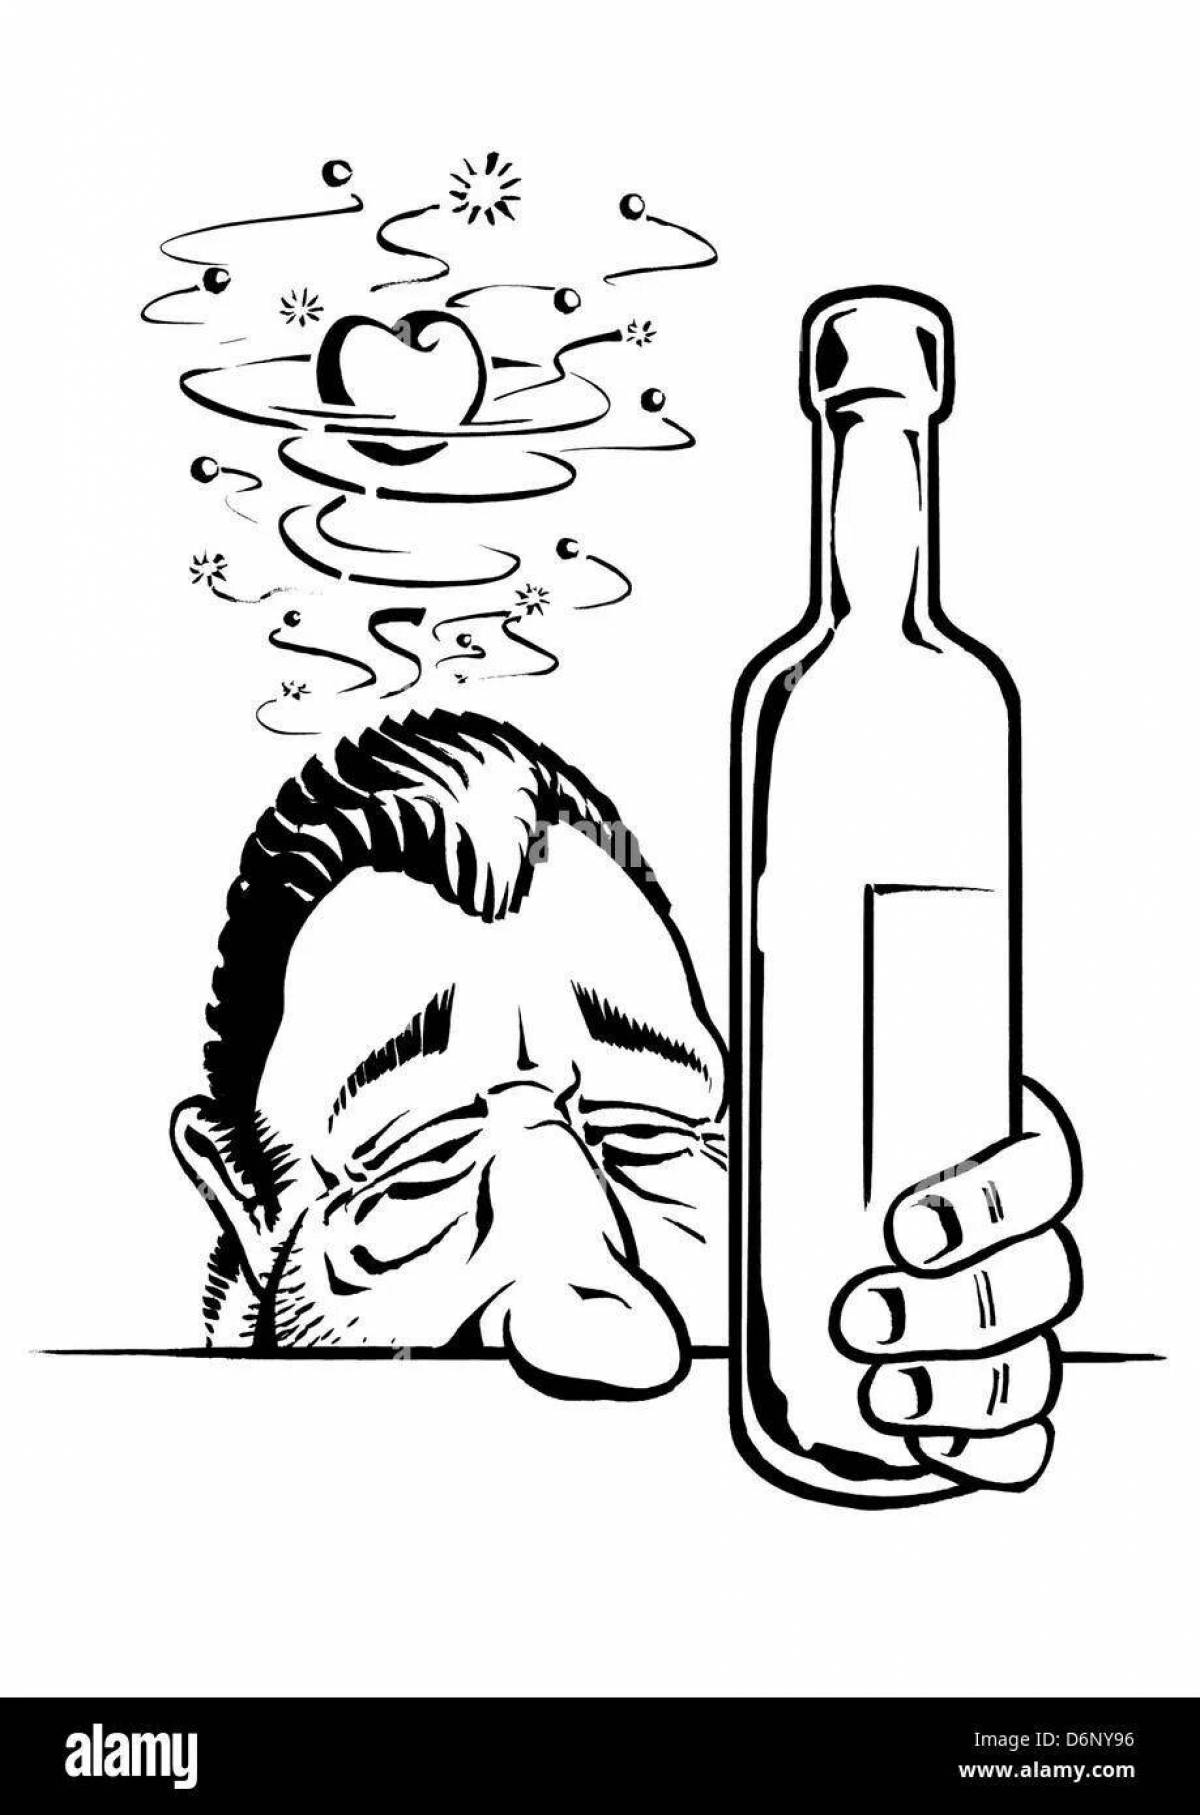 Алкоголик иллюстрация